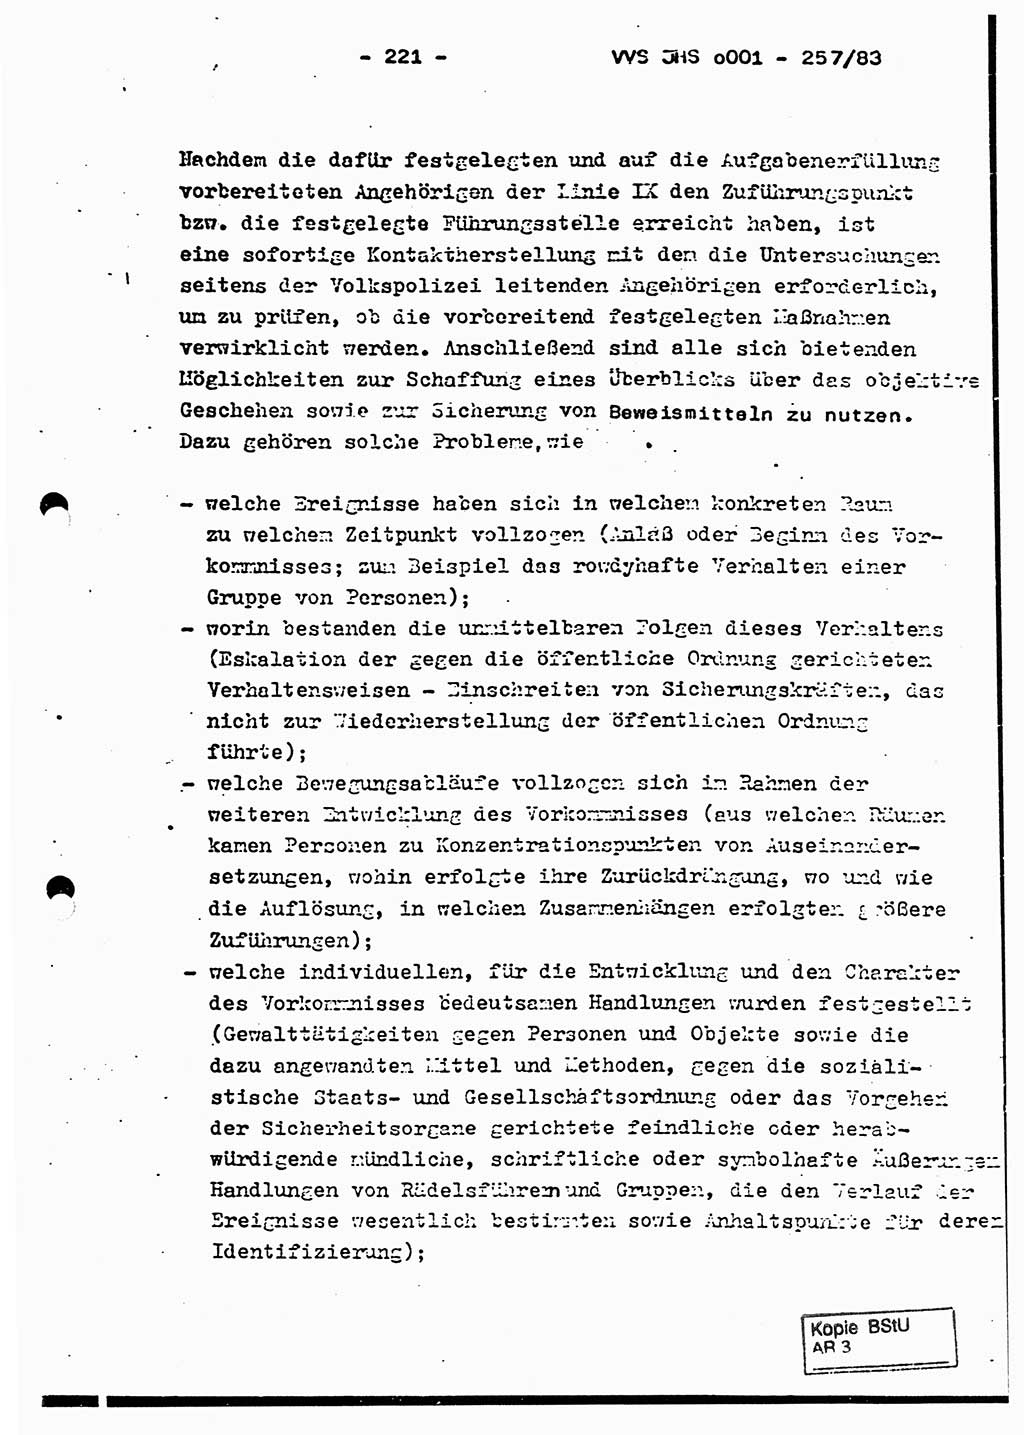 Dissertation, Oberst Helmut Lubas (BV Mdg.), Oberstleutnant Manfred Eschberger (HA IX), Oberleutnant Hans-Jürgen Ludwig (JHS), Ministerium für Staatssicherheit (MfS) [Deutsche Demokratische Republik (DDR)], Juristische Hochschule (JHS), Vertrauliche Verschlußsache (VVS) o001-257/83, Potsdam 1983, Seite 221 (Diss. MfS DDR JHS VVS o001-257/83 1983, S. 221)